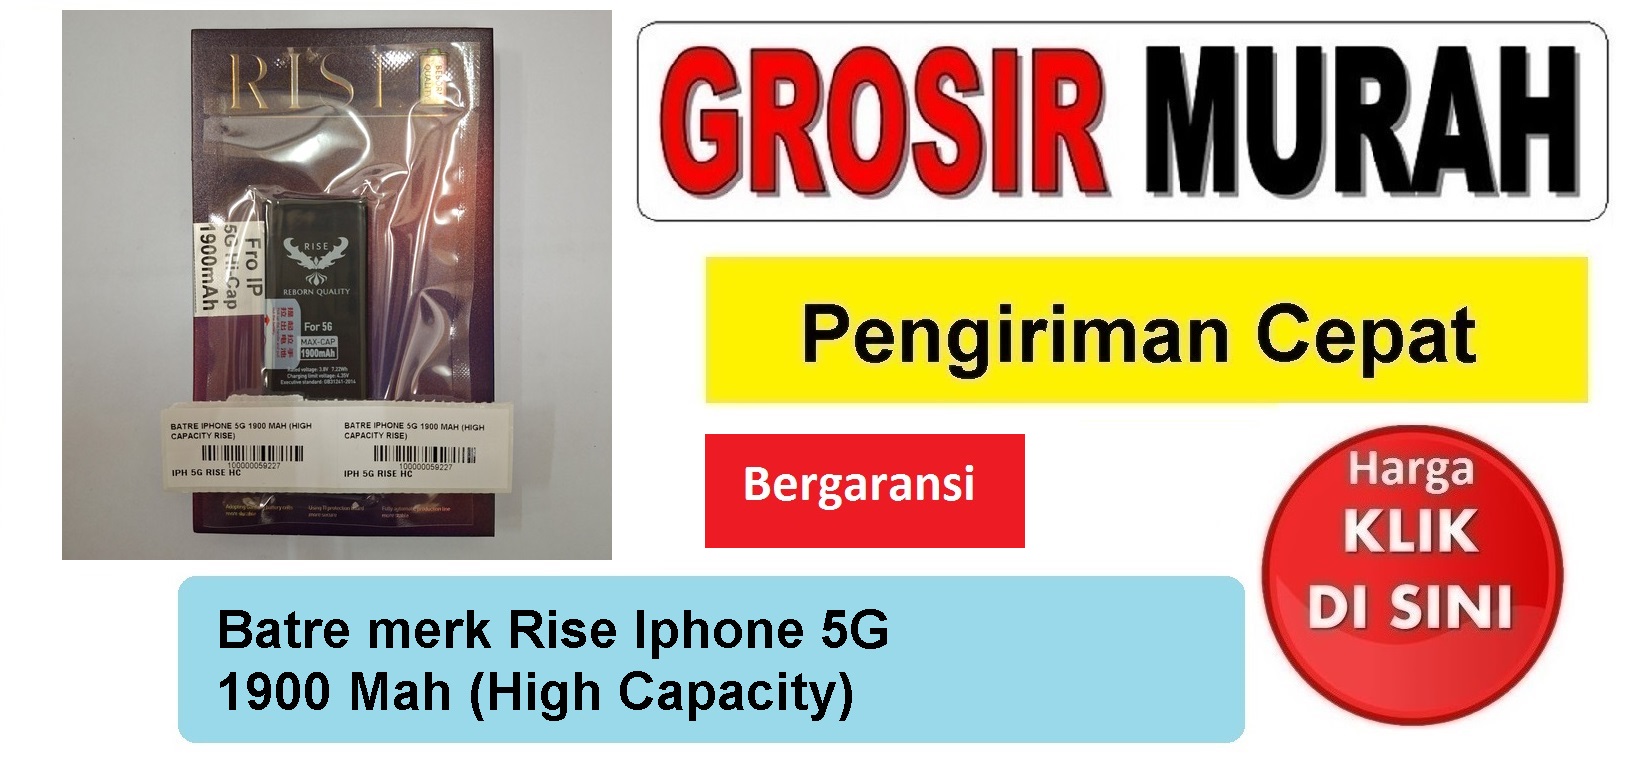 Batre merk Rise Iphone 5G 1900 Mah (High Capacity) Baterai Battery Bergaransi Batere